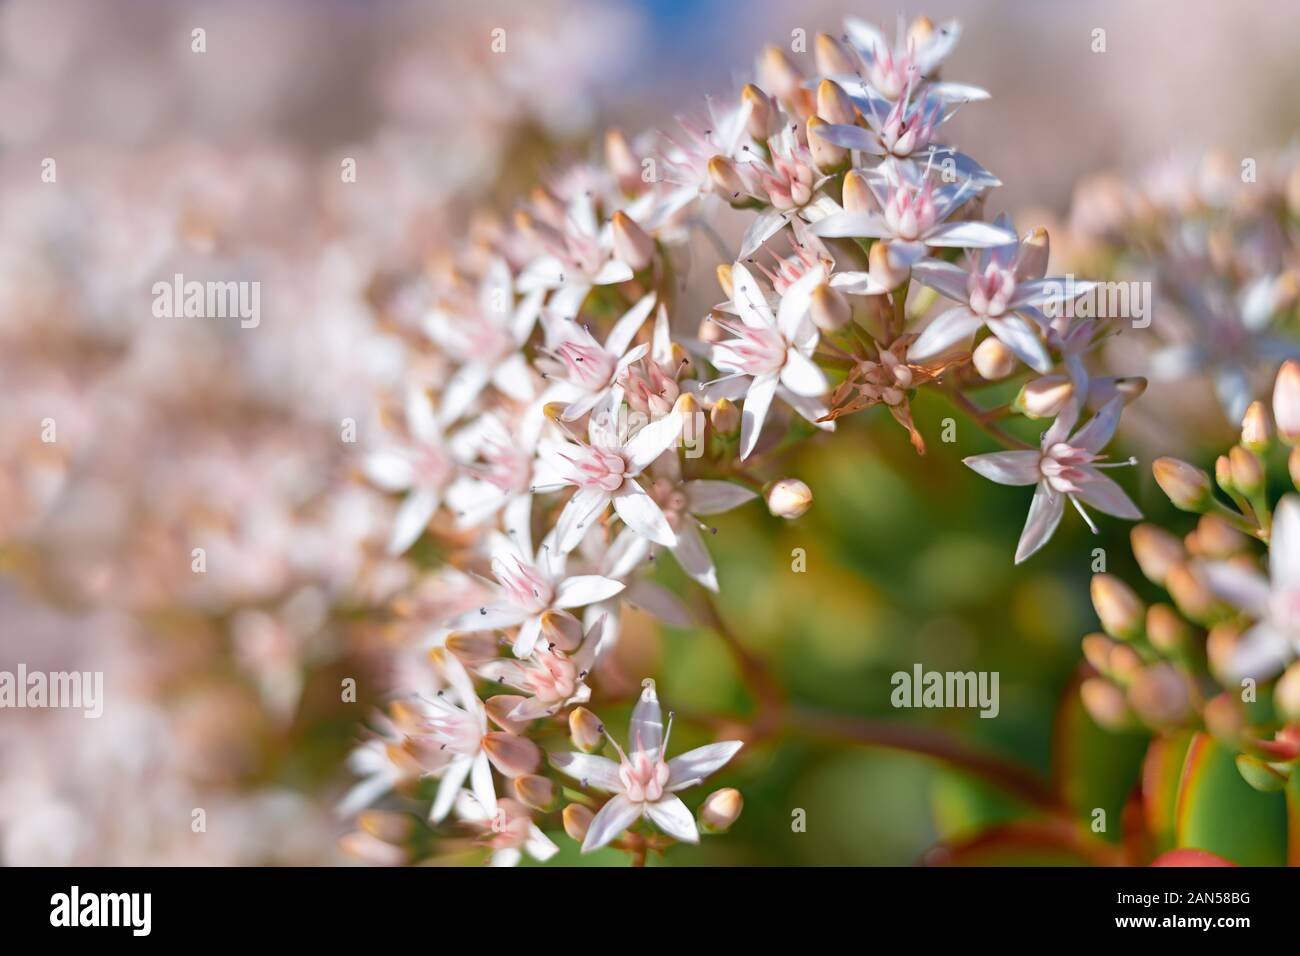 Rama de plantas suculentas con hermosas flores blancas. Fondo floral,  árboles en flor, llega la primavera concepto Fotografía de stock - Alamy